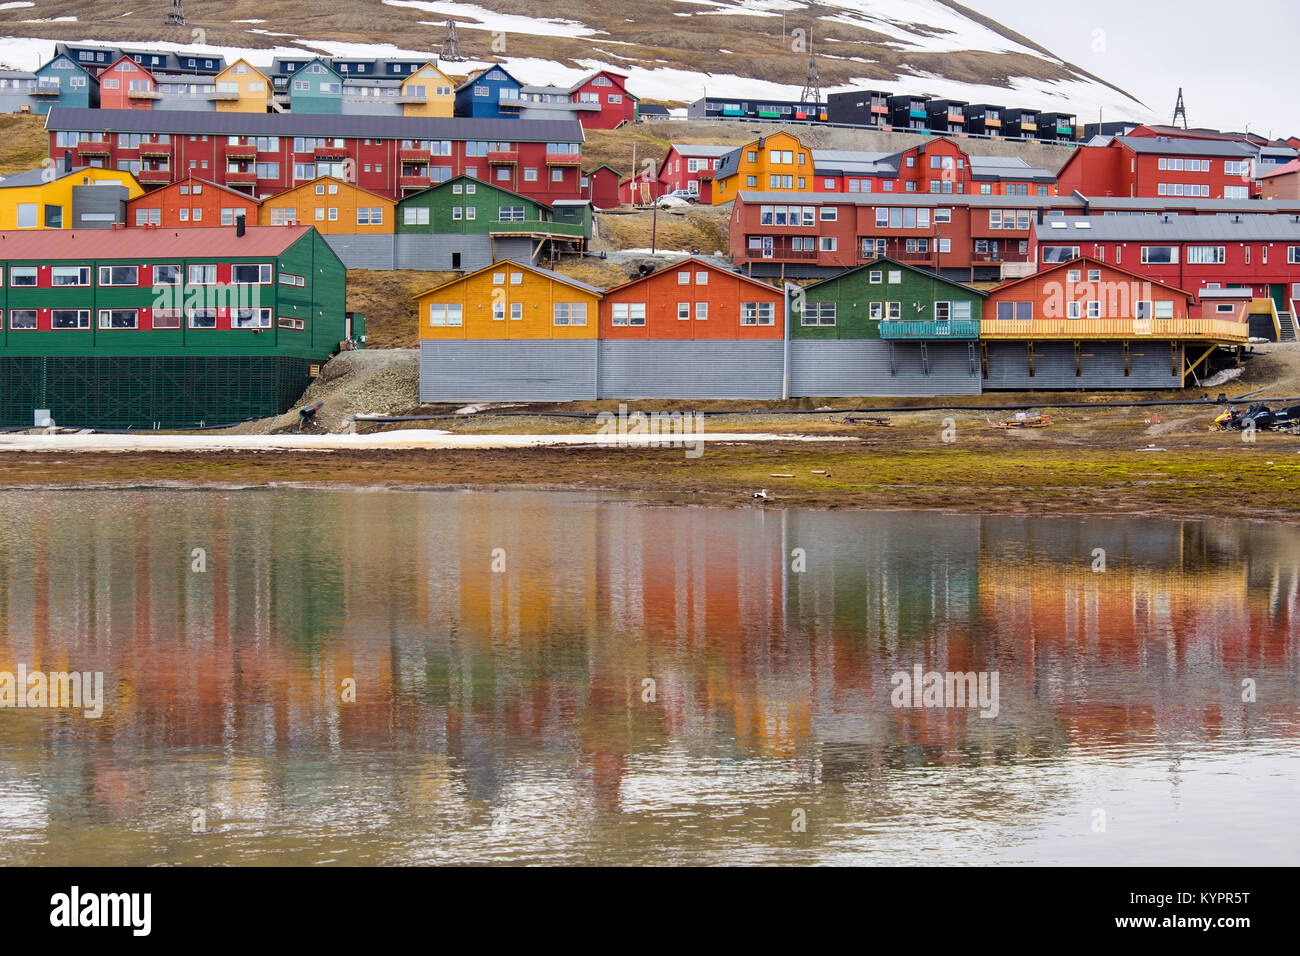 Maisons colorées reflète dans l'eau en ville minière de Longyearbyen, l'île de Spitsbergen, Svalbard, Norvège, Scandinavie Banque D'Images